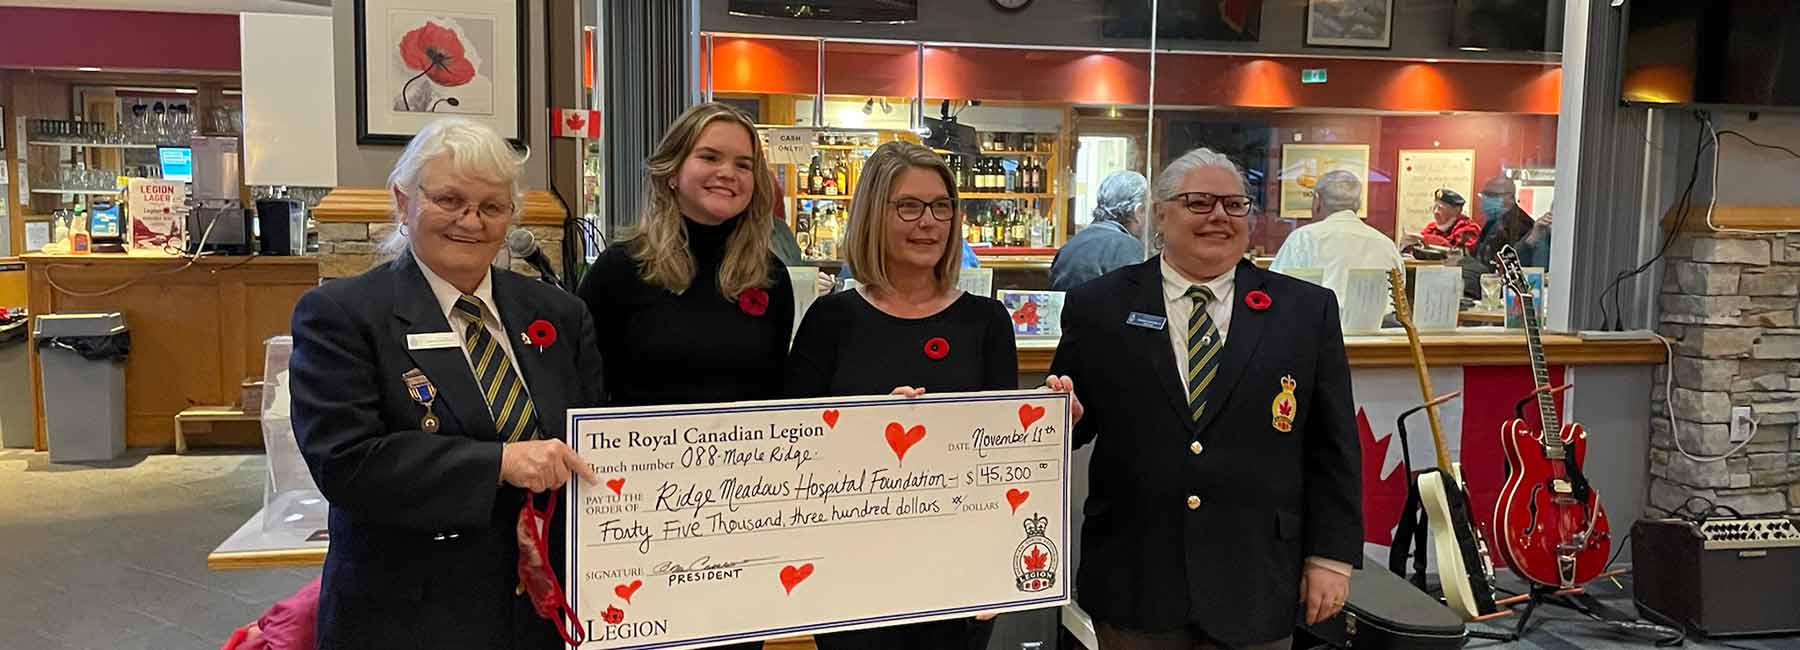 Maple Ridge Legion Donates $45,300